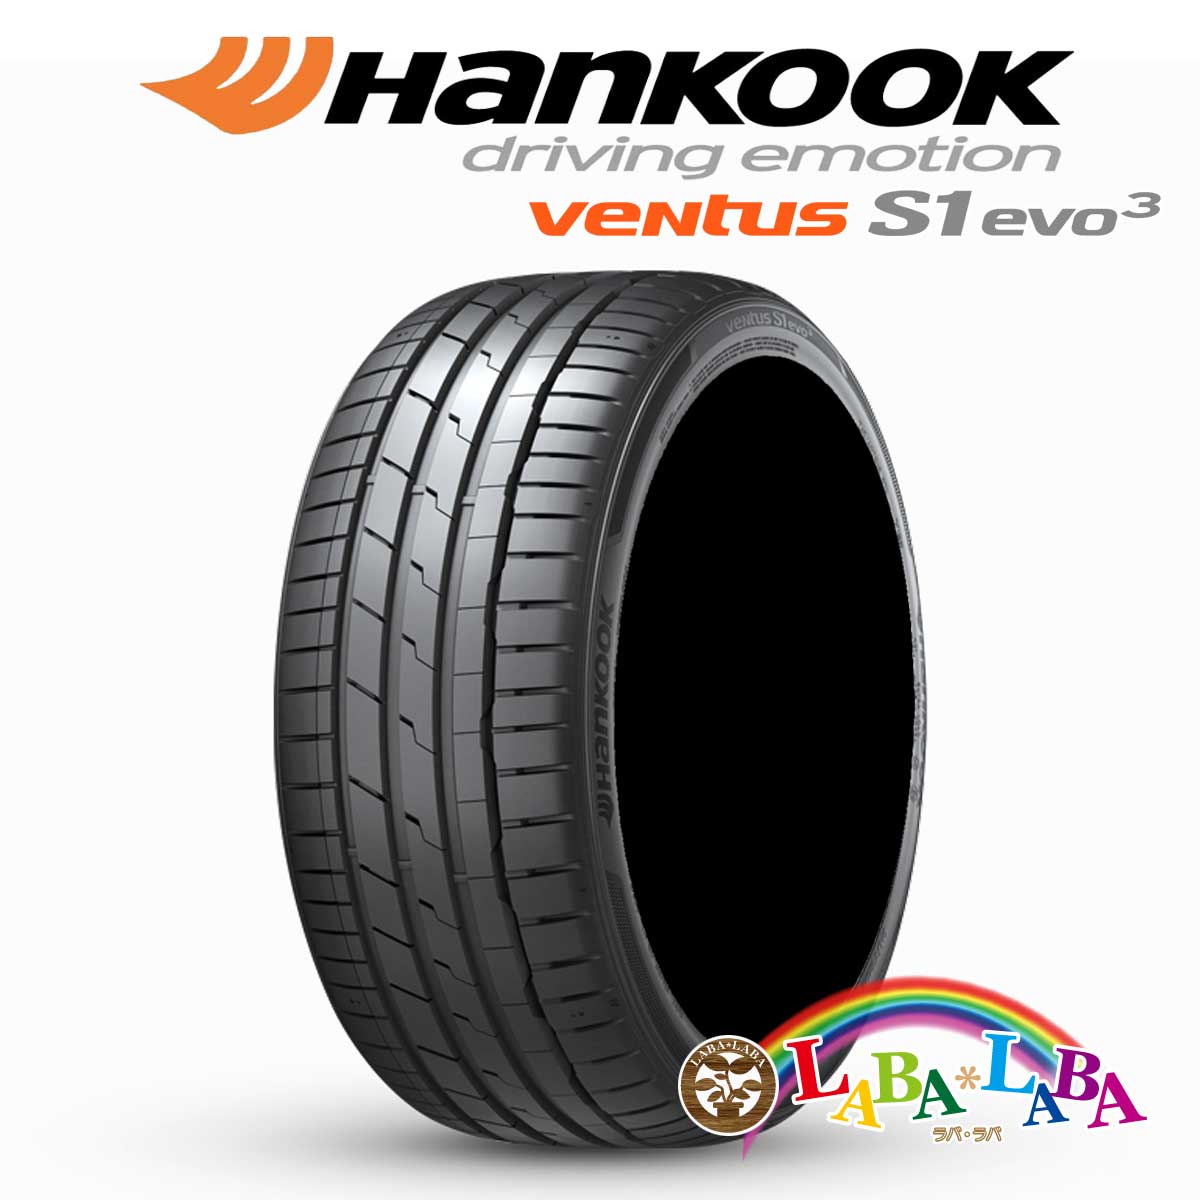 HANKOOK ハンコック VENTUS S1 evo3 ベンタス K127 215/40R18 89Y XL サマータイヤ 4本セット